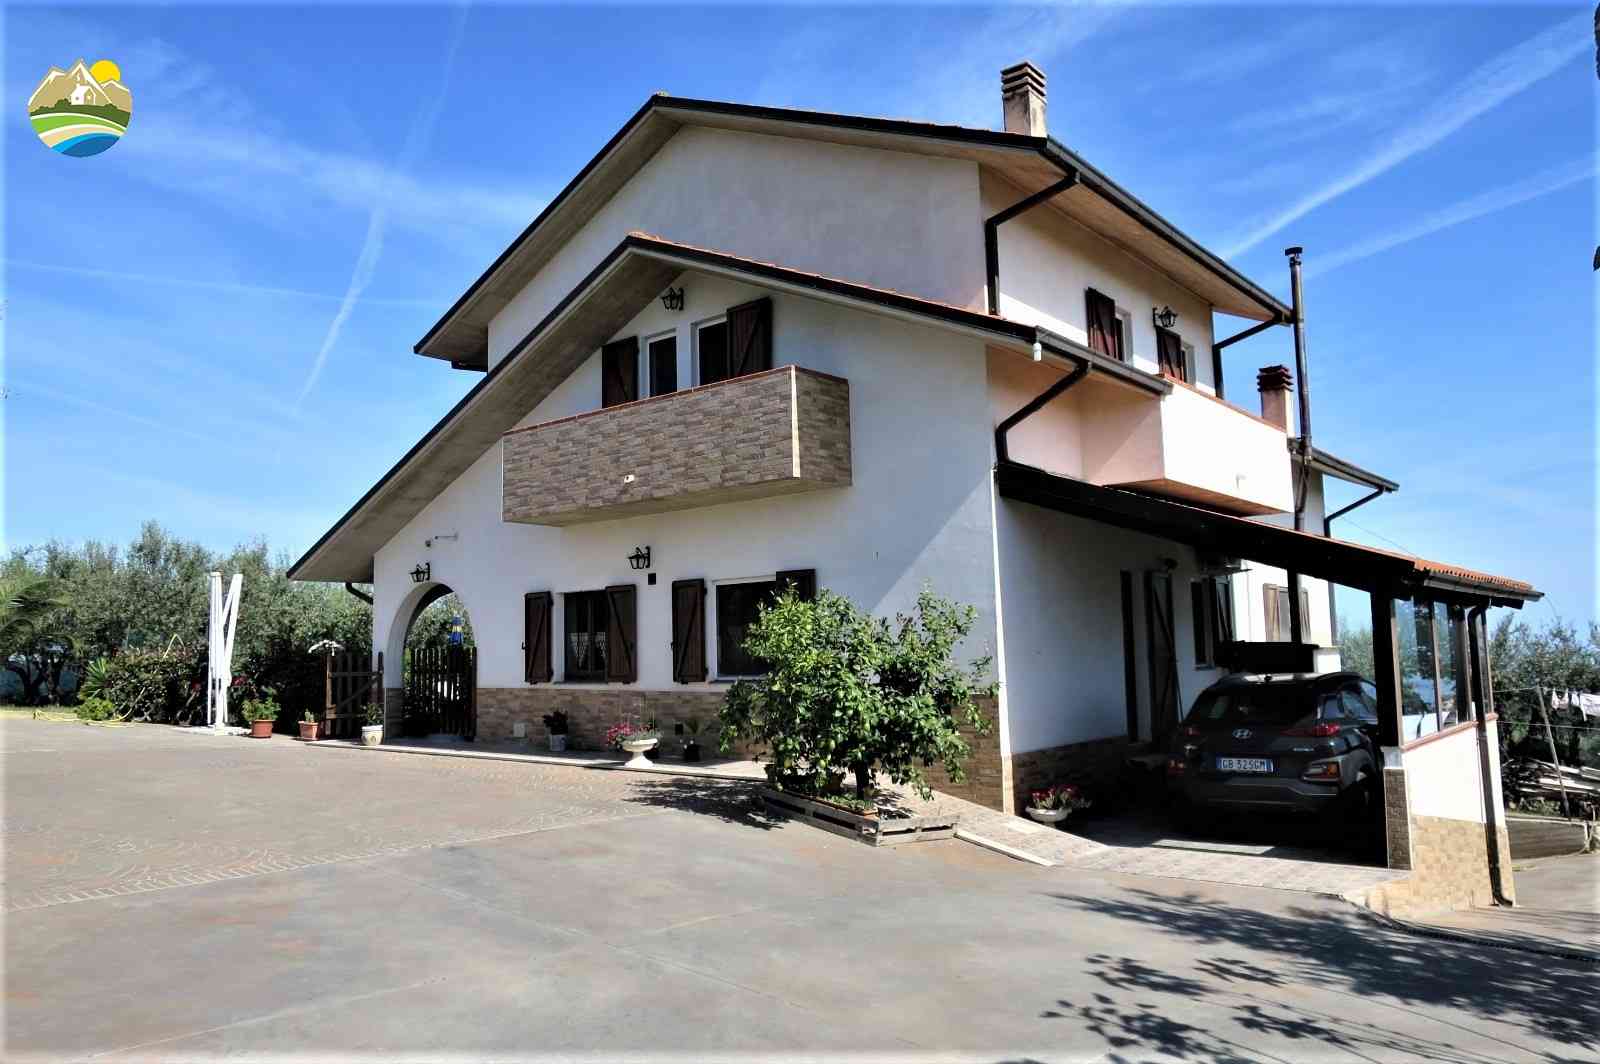 Villa Villa for sale Pineto (TE), Villa Miramare - Pineto - EUR 543.189 570